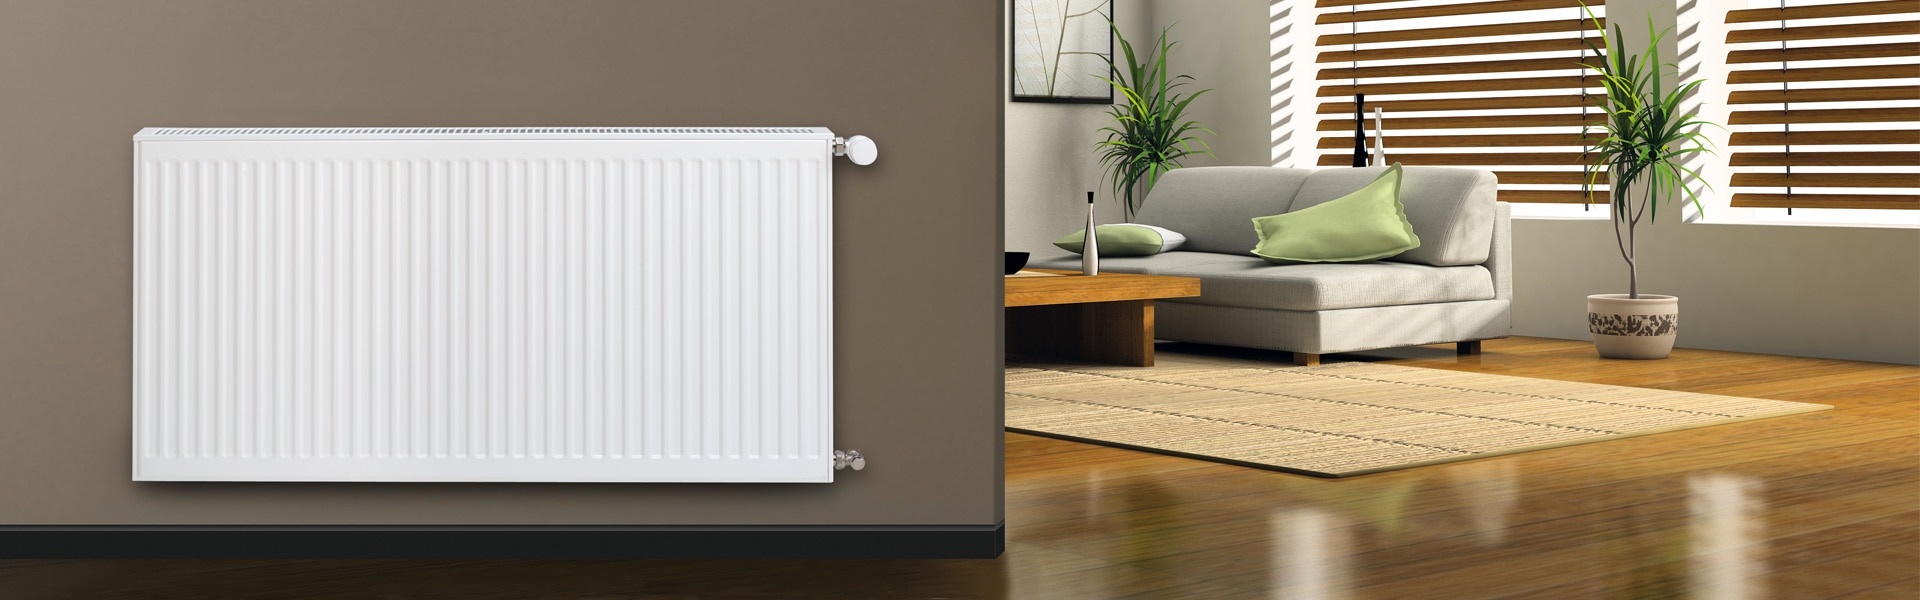 Jak odvzdušnit topení či radiátor? Krok za krokem